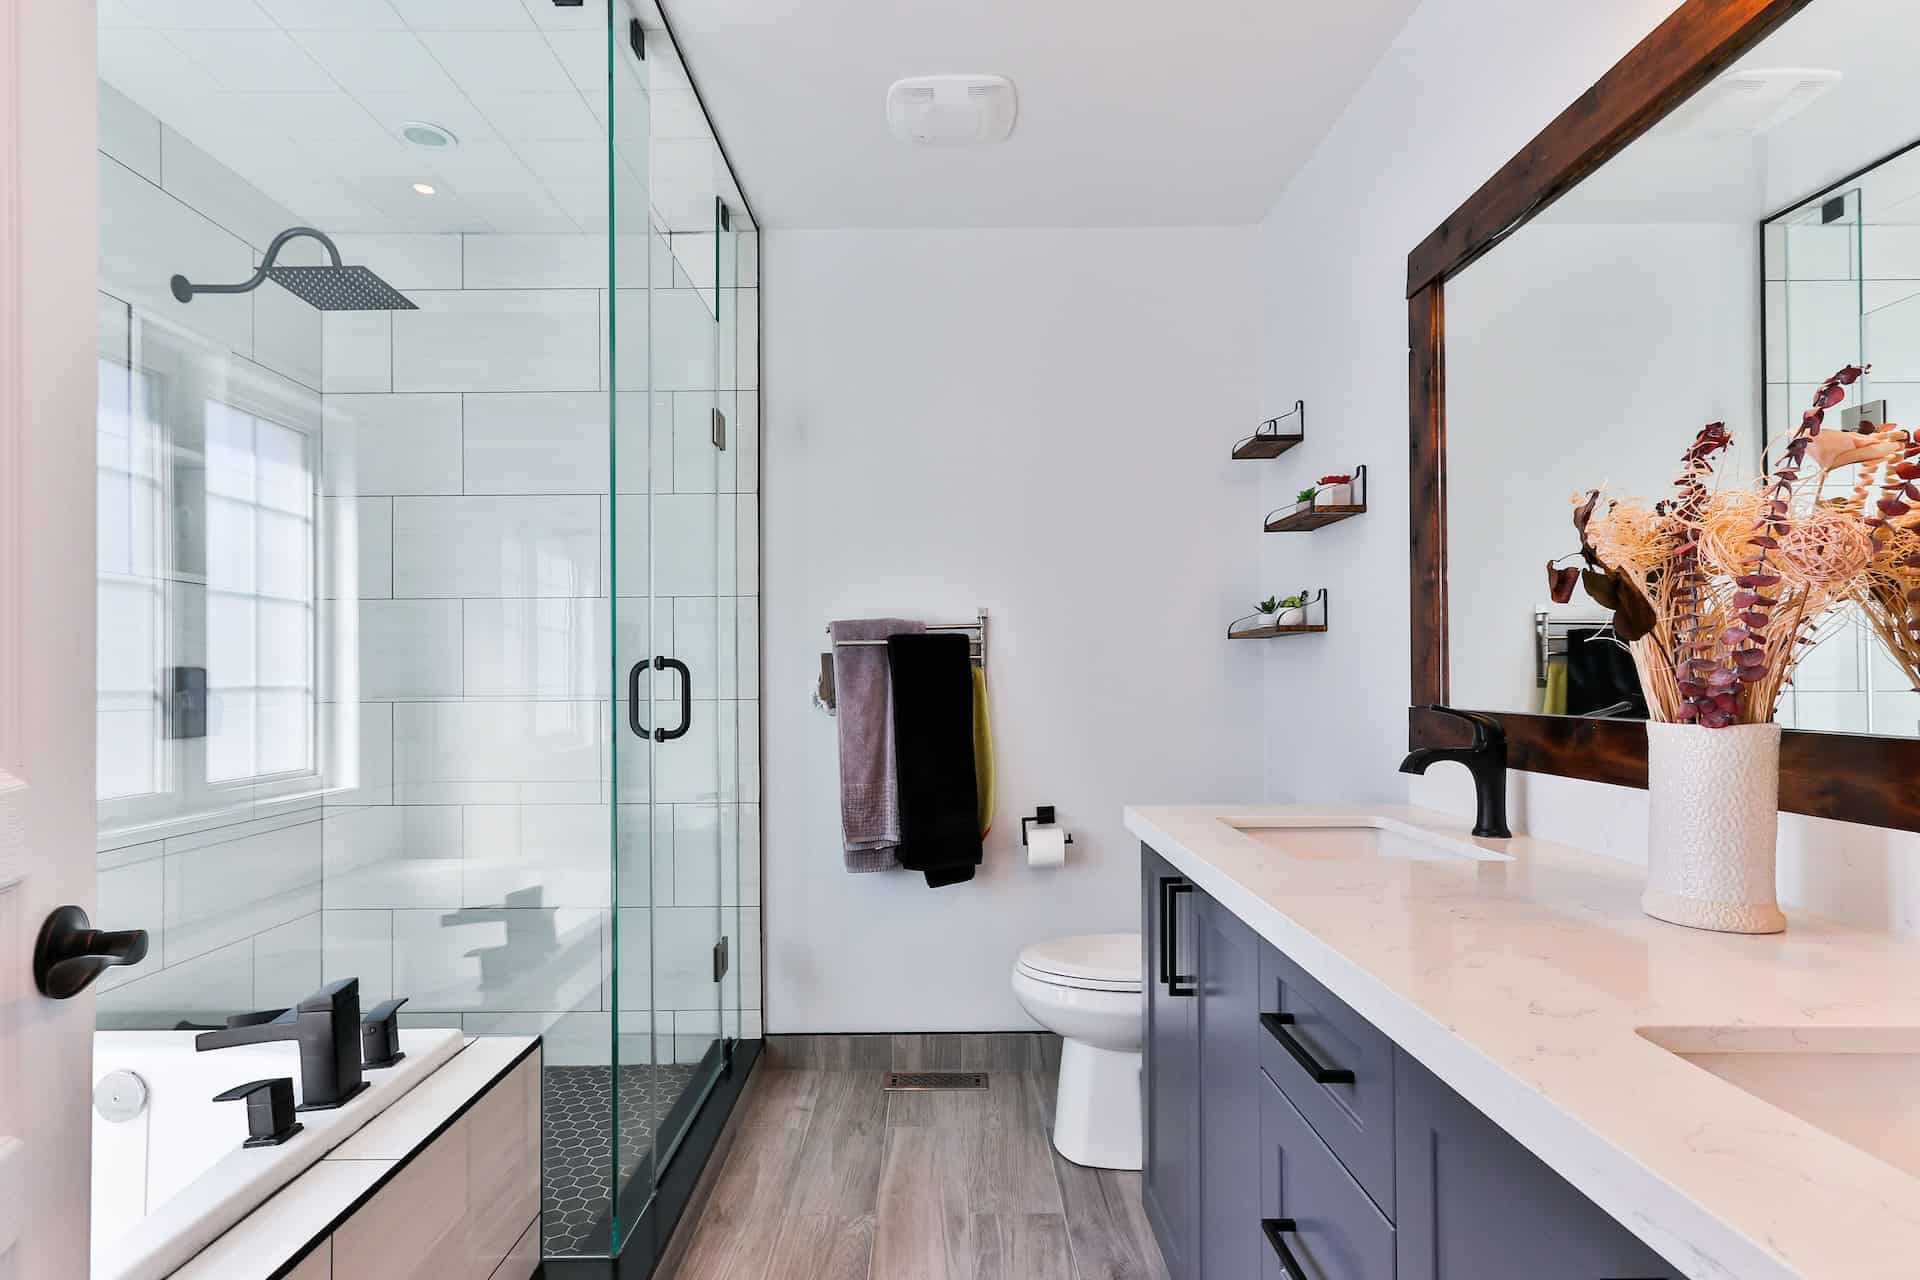 Banheiro pequeno decorado: 6 dicas para otimizar e decorar o espaço.